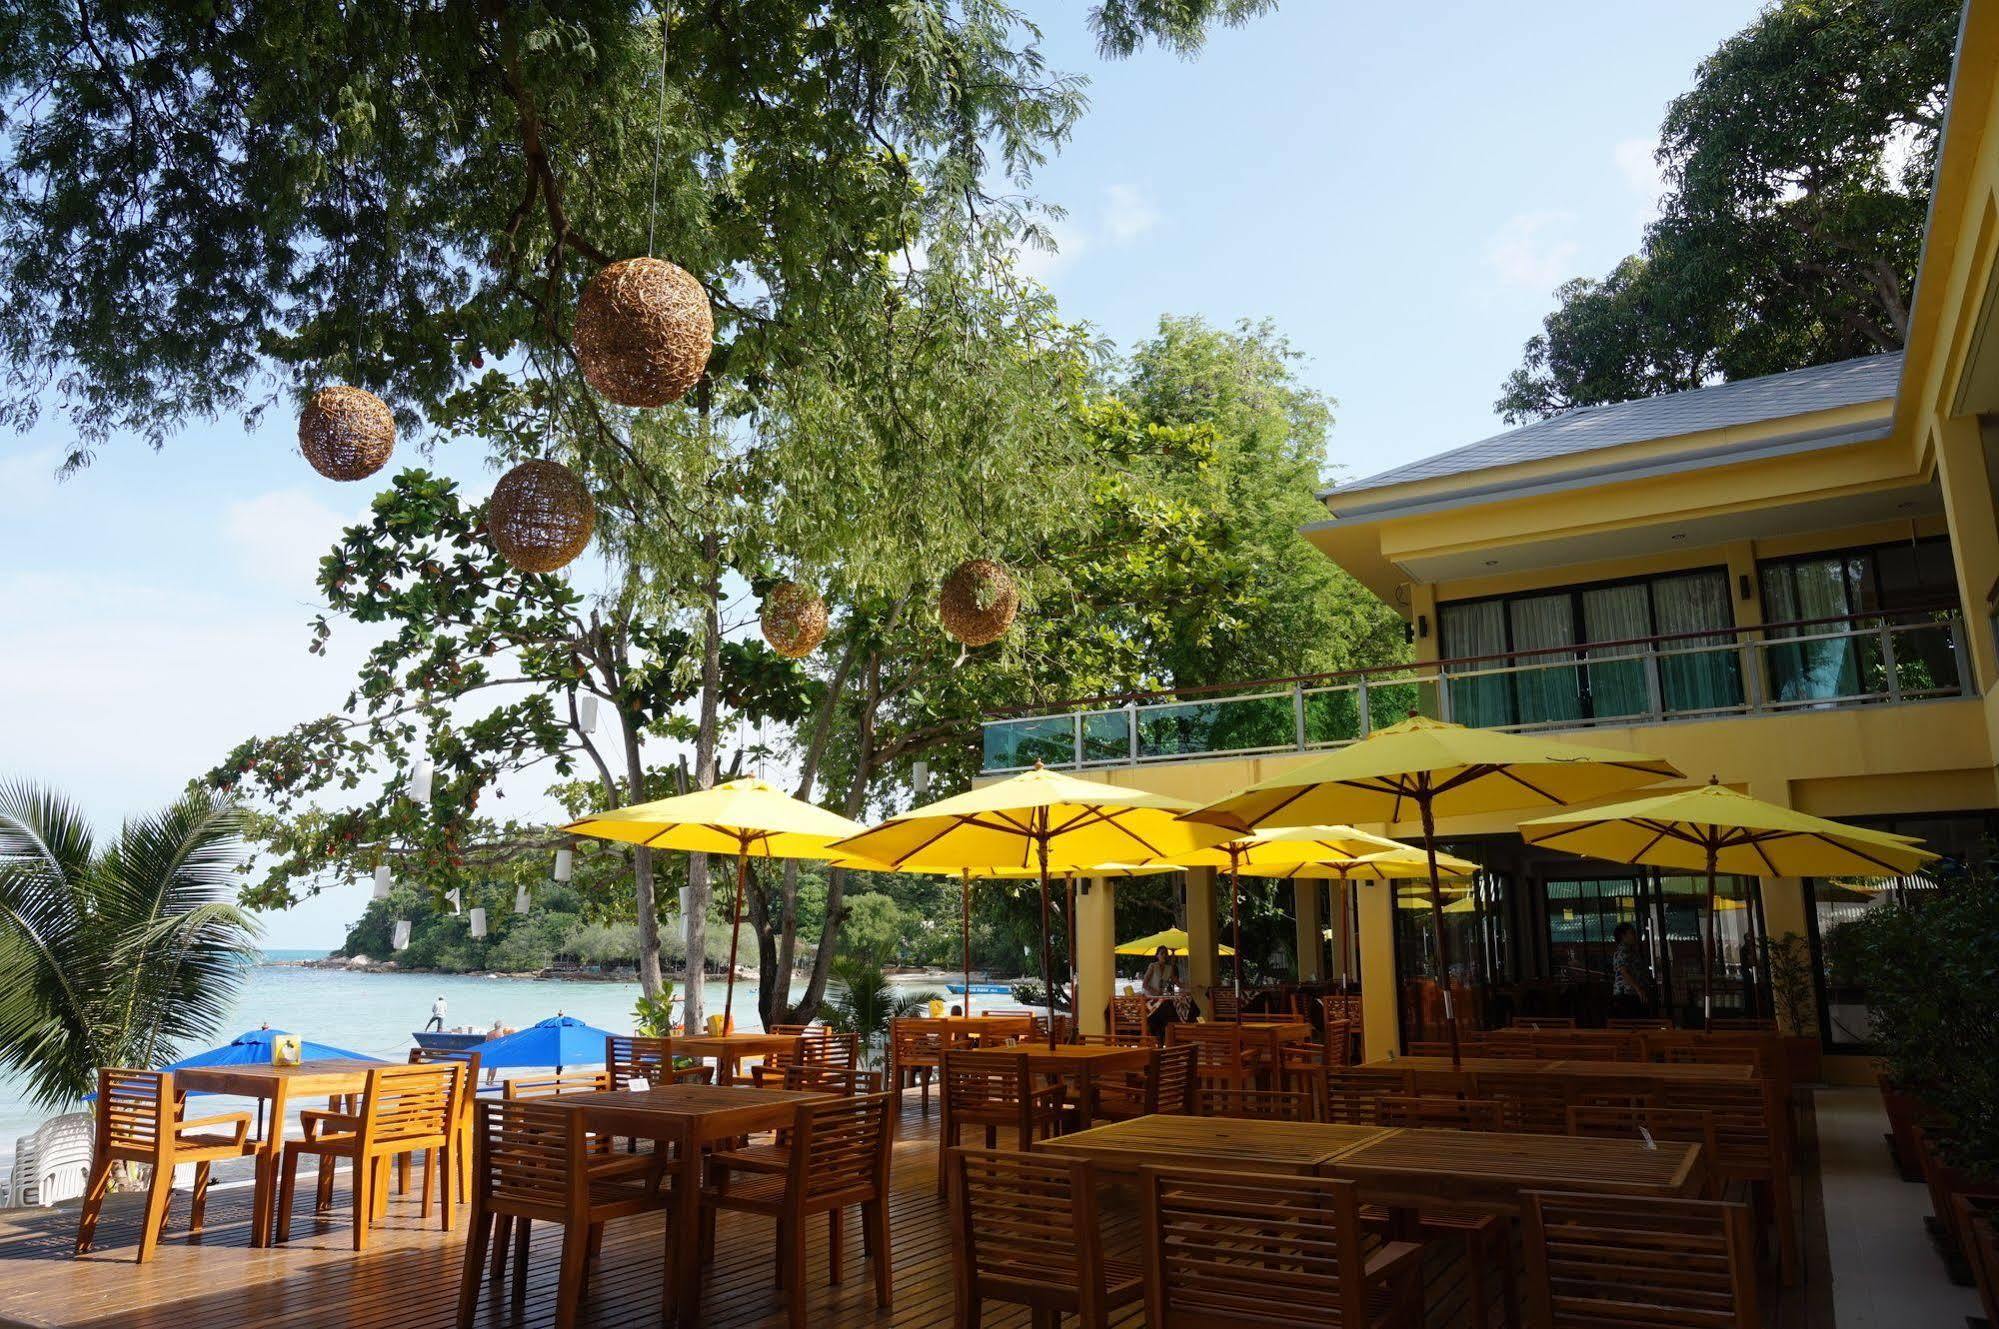 Vongdeuan Resort Koh Samet Zewnętrze zdjęcie